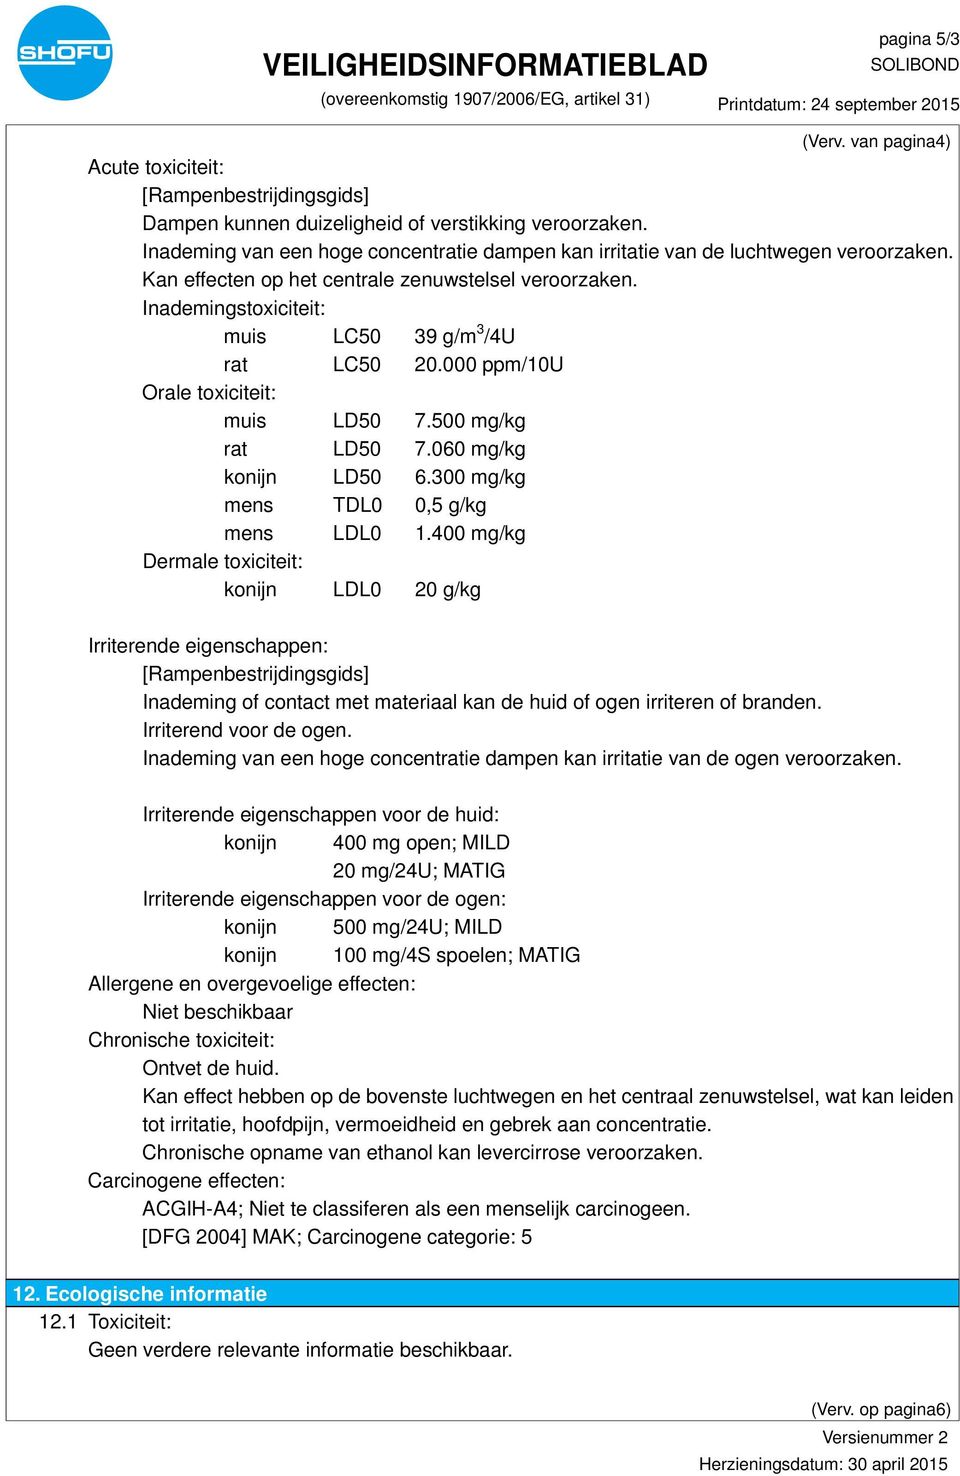 000 ppm/10u Orale toxiciteit: muis LD50 7.500 mg/kg rat LD50 7.060 mg/kg konijn LD50 6.300 mg/kg mens TDL0 0,5 g/kg mens LDL0 1.